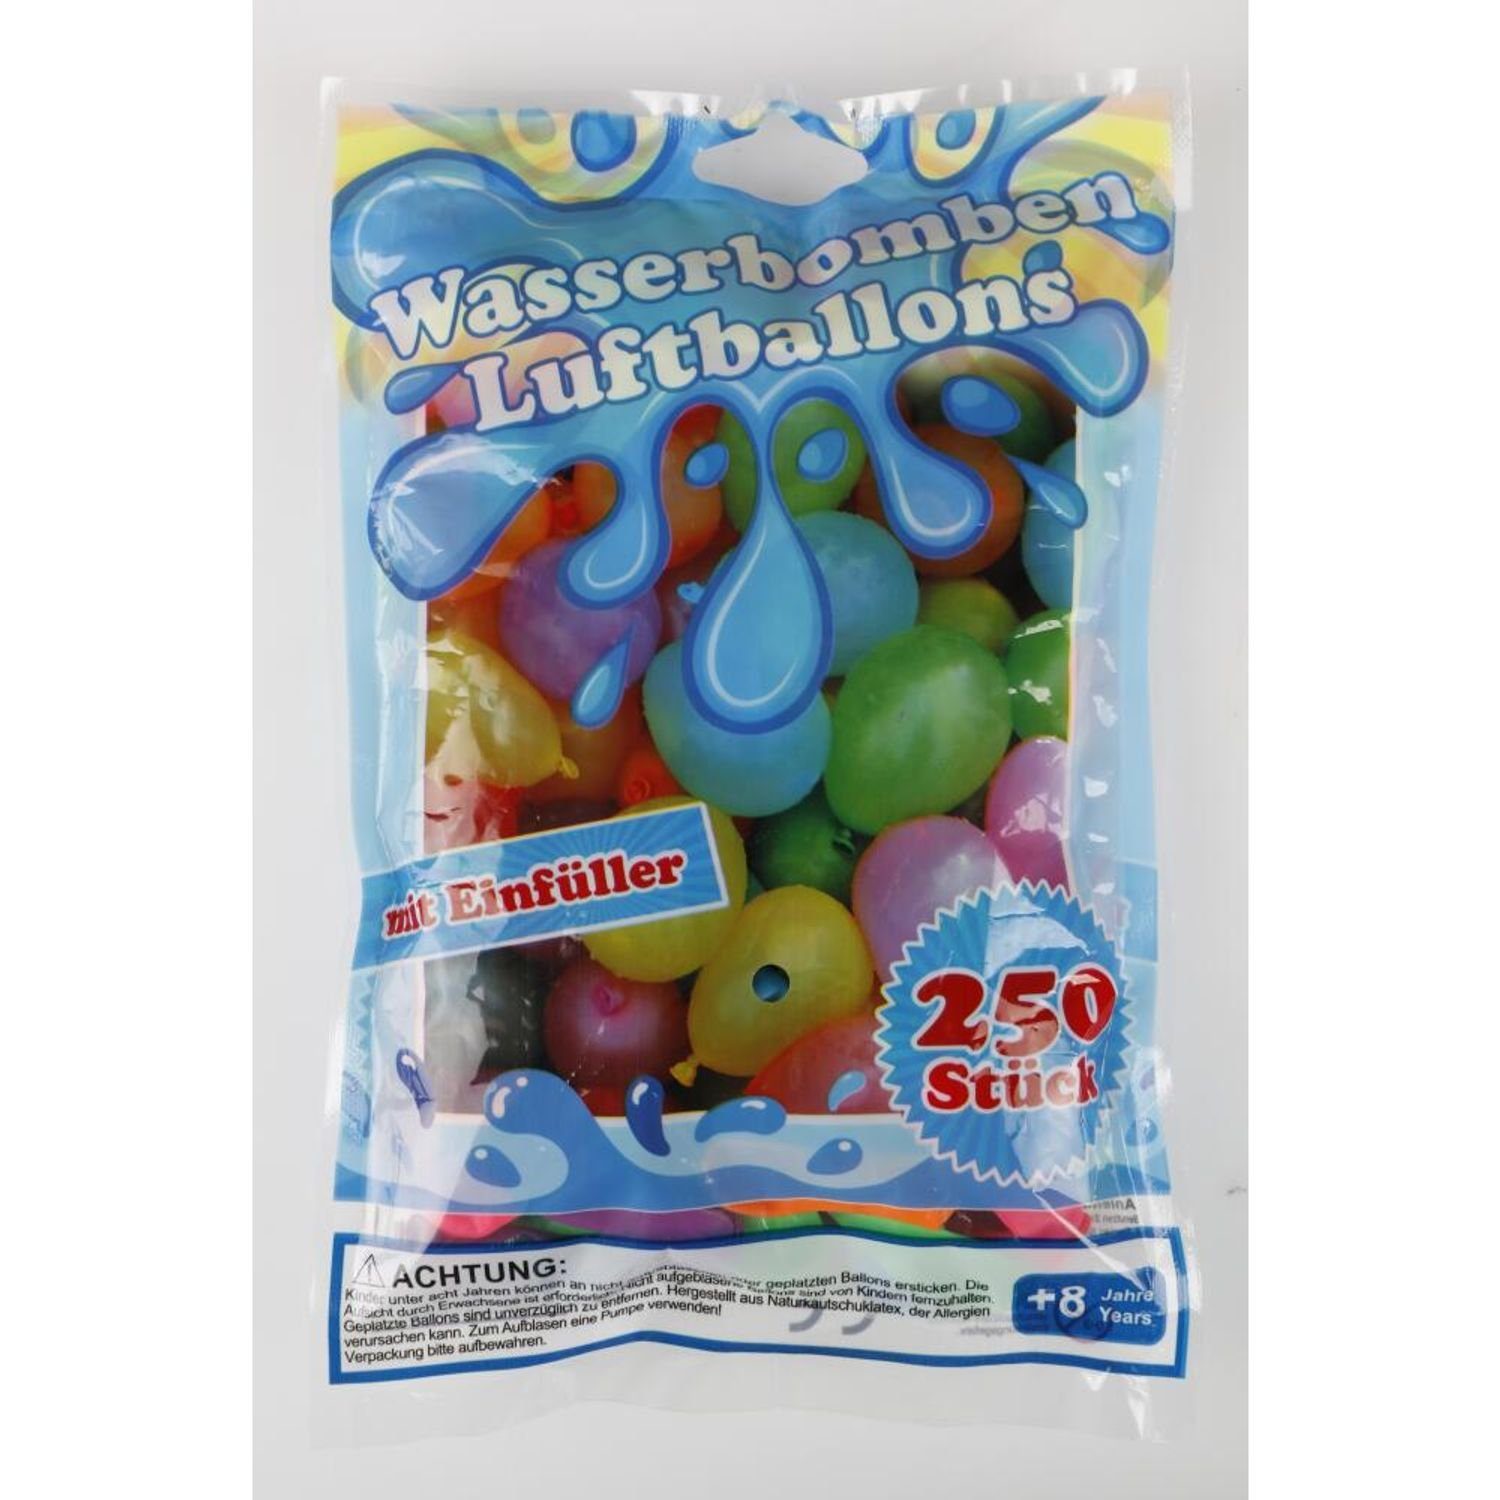 BURI Folienballon 48x Wasserbomben Spielzeug Fun Garten Party Spaß toben Play Wasserschl